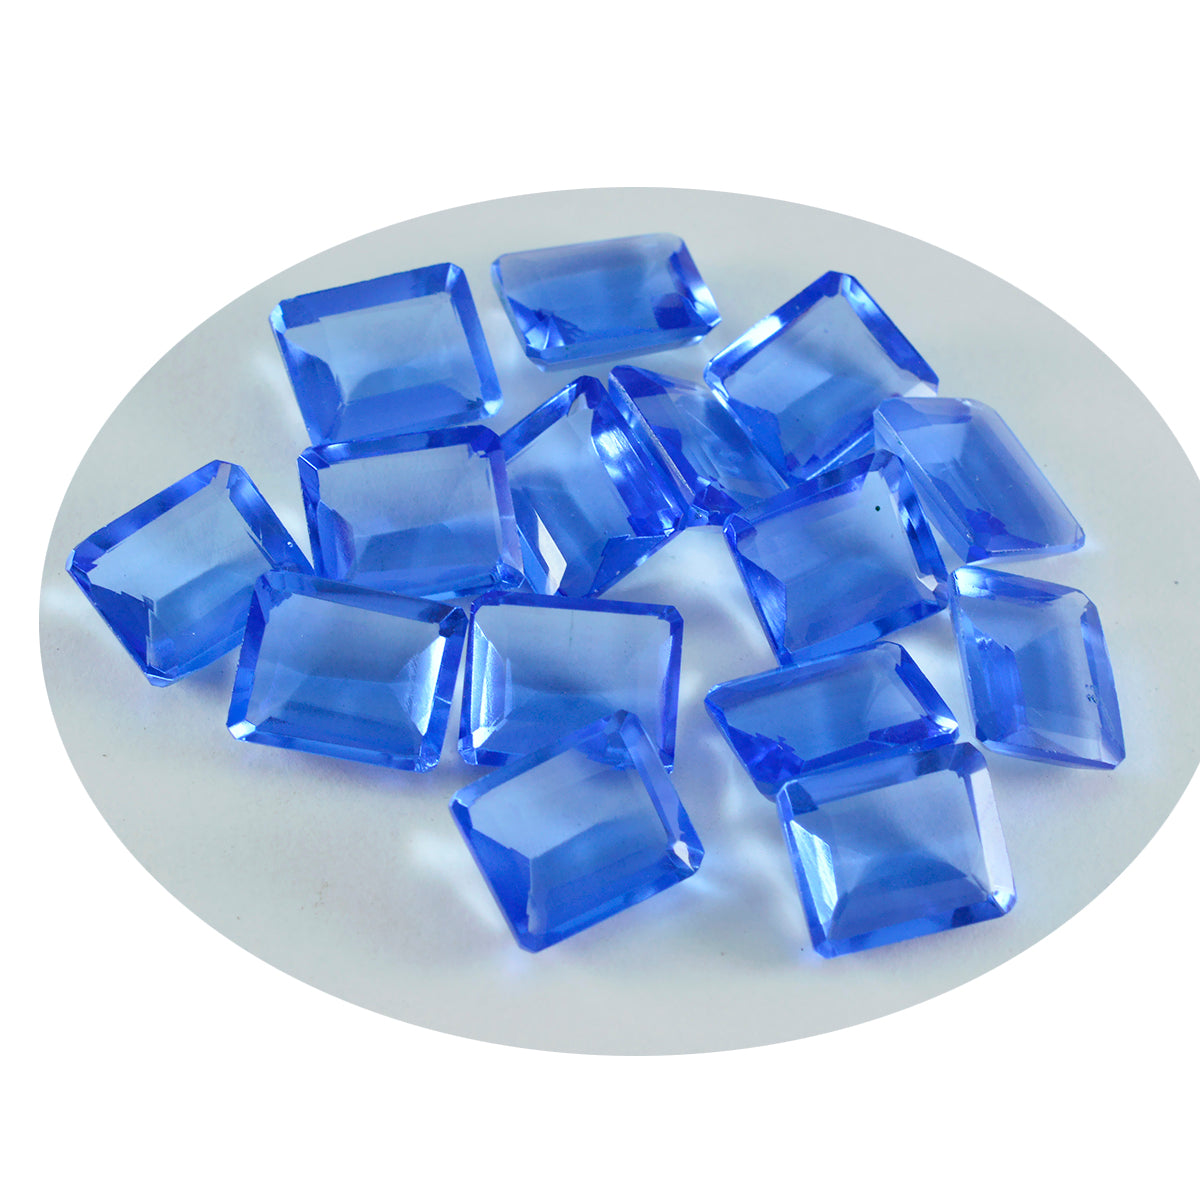 riyogems 1шт синий сапфир cz ограненный 7x9 мм восьмиугольная форма отличное качество россыпь драгоценных камней